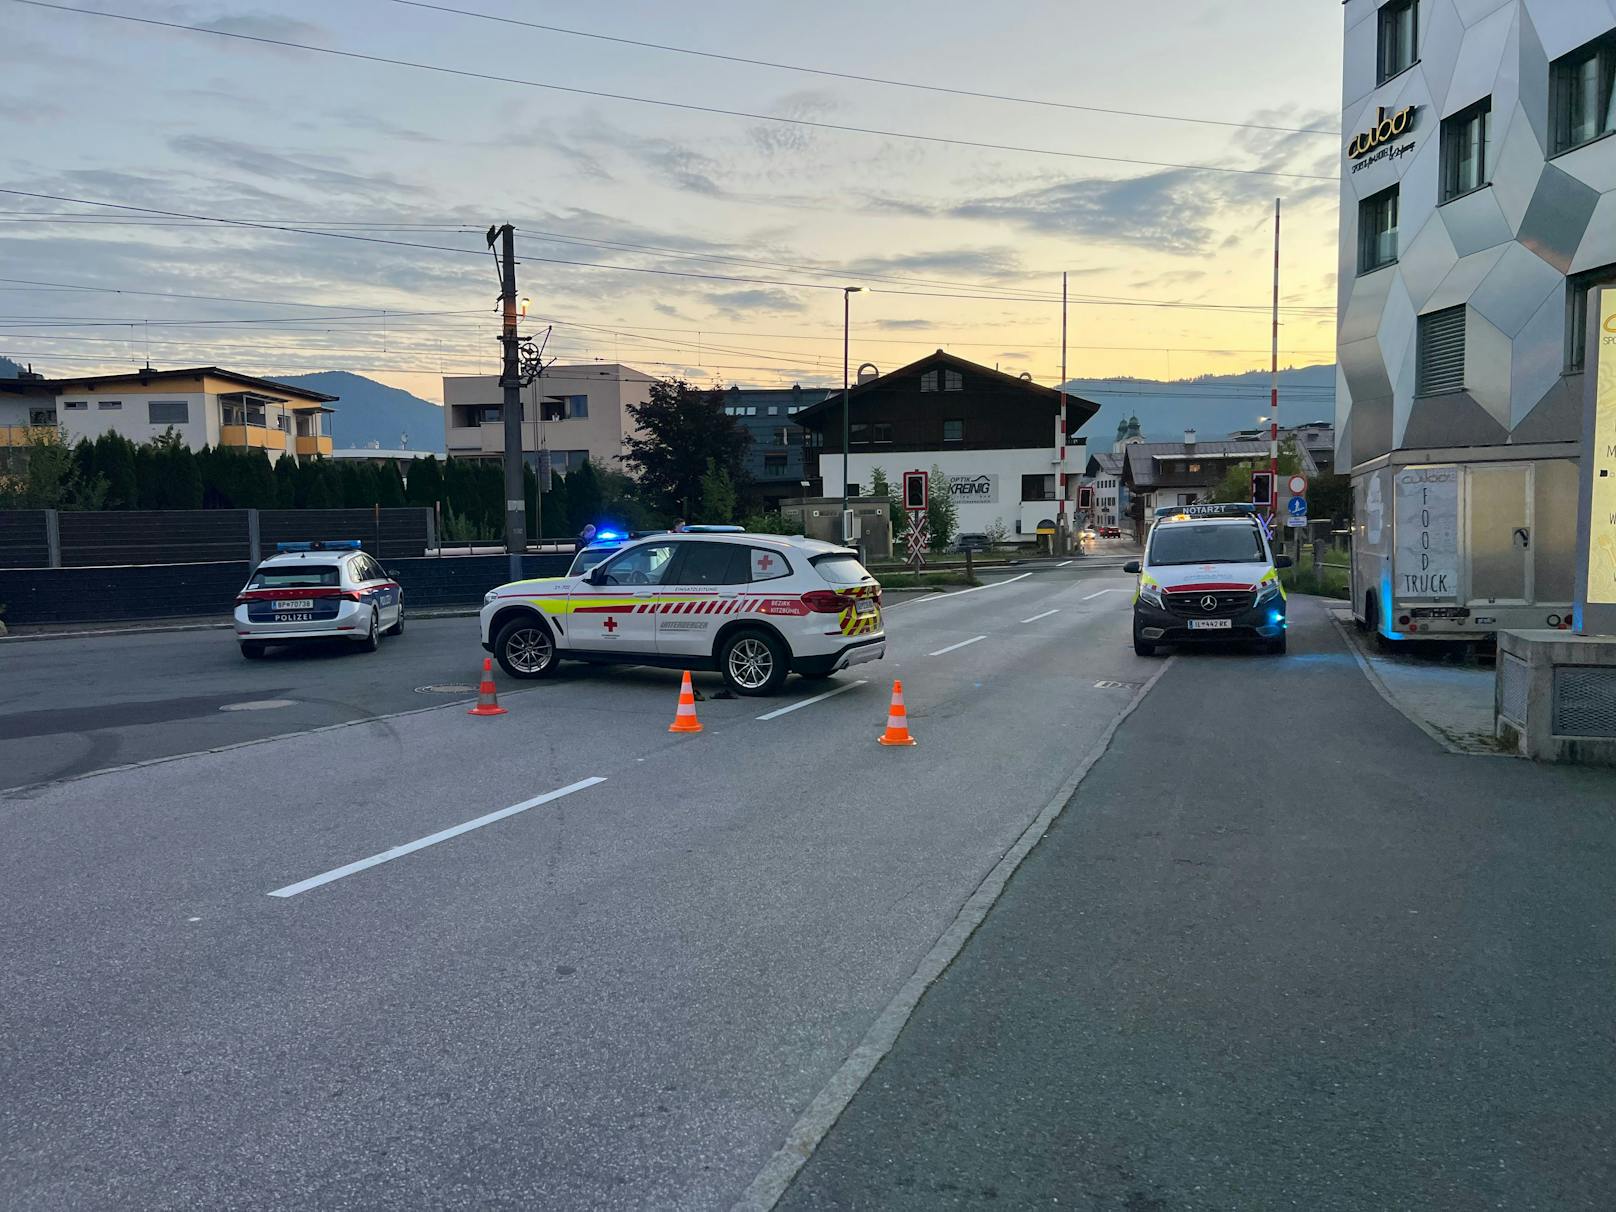 In St. Johann kam es am 26. August bei einer Verfolgungsjagd zu einer Schussabgabe durch die Polizei. Ein 14-Jähriger wurde getroffen und verletzt.